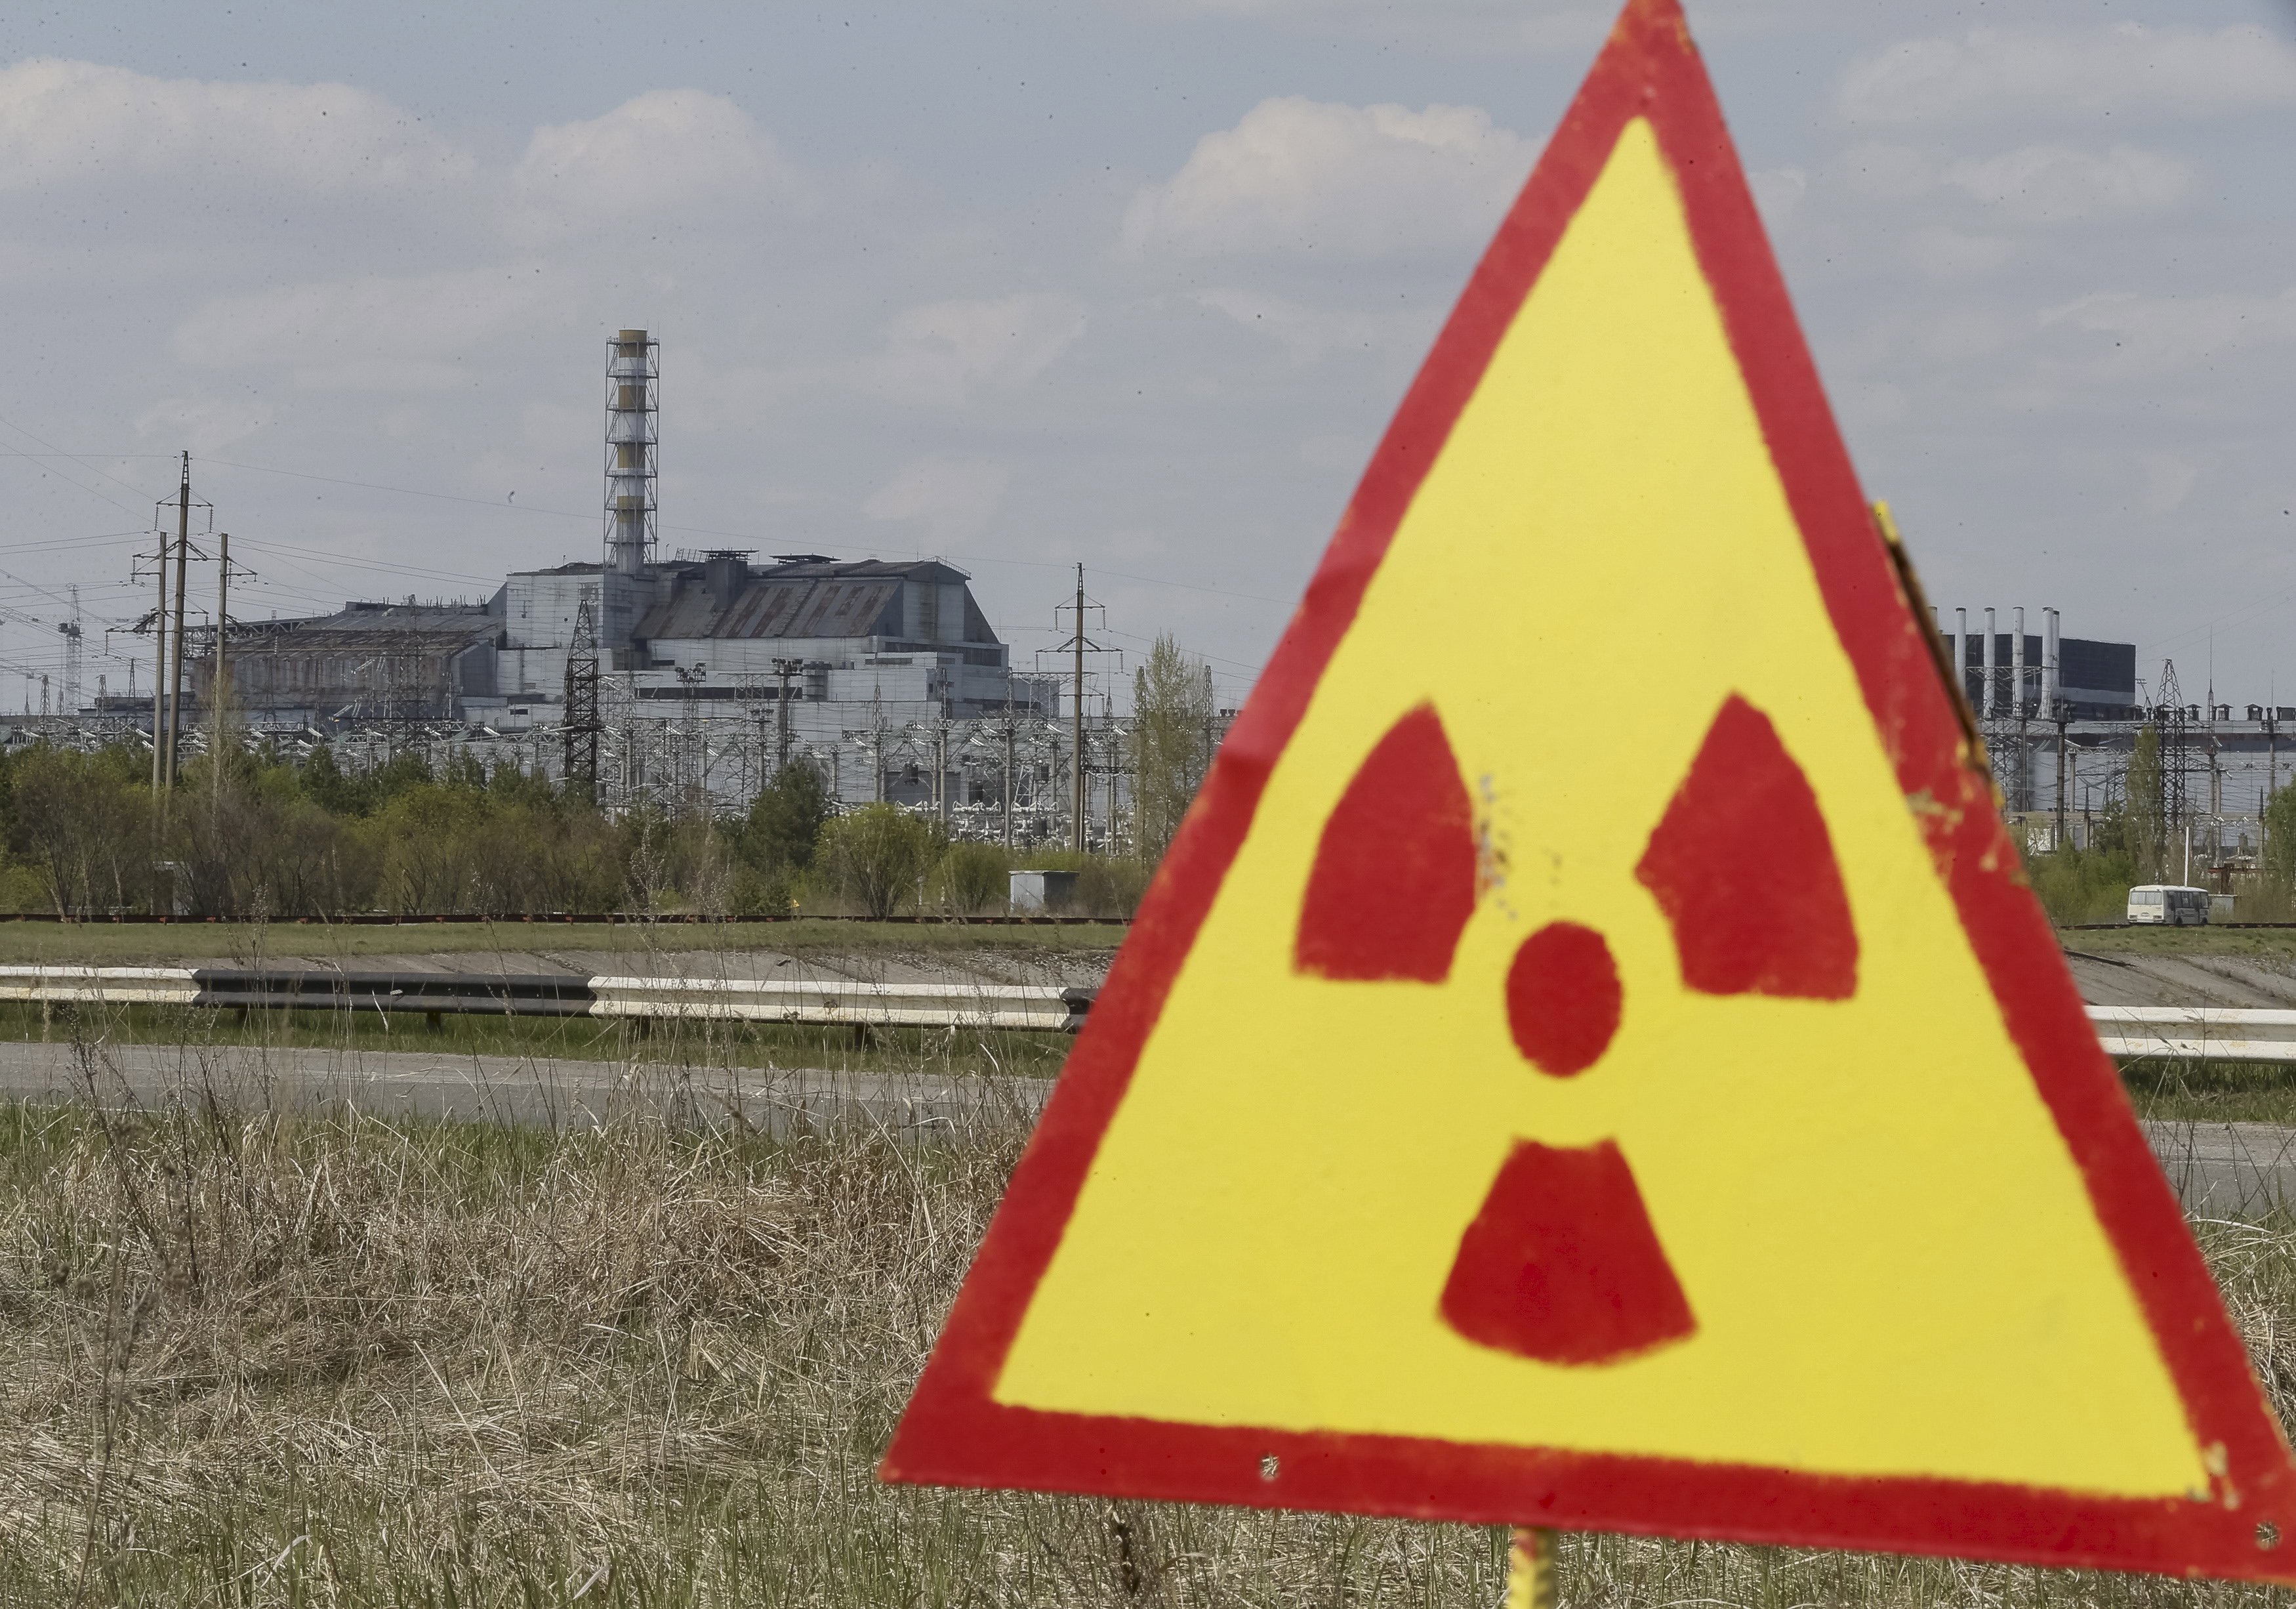 Случаи радиации. Чернобыль радиоактивный выброс Чернобыль. Запорожская атомная электростанция зона радиации. Чернобыль выброс радиации. Радиационная авария Чернобыль.